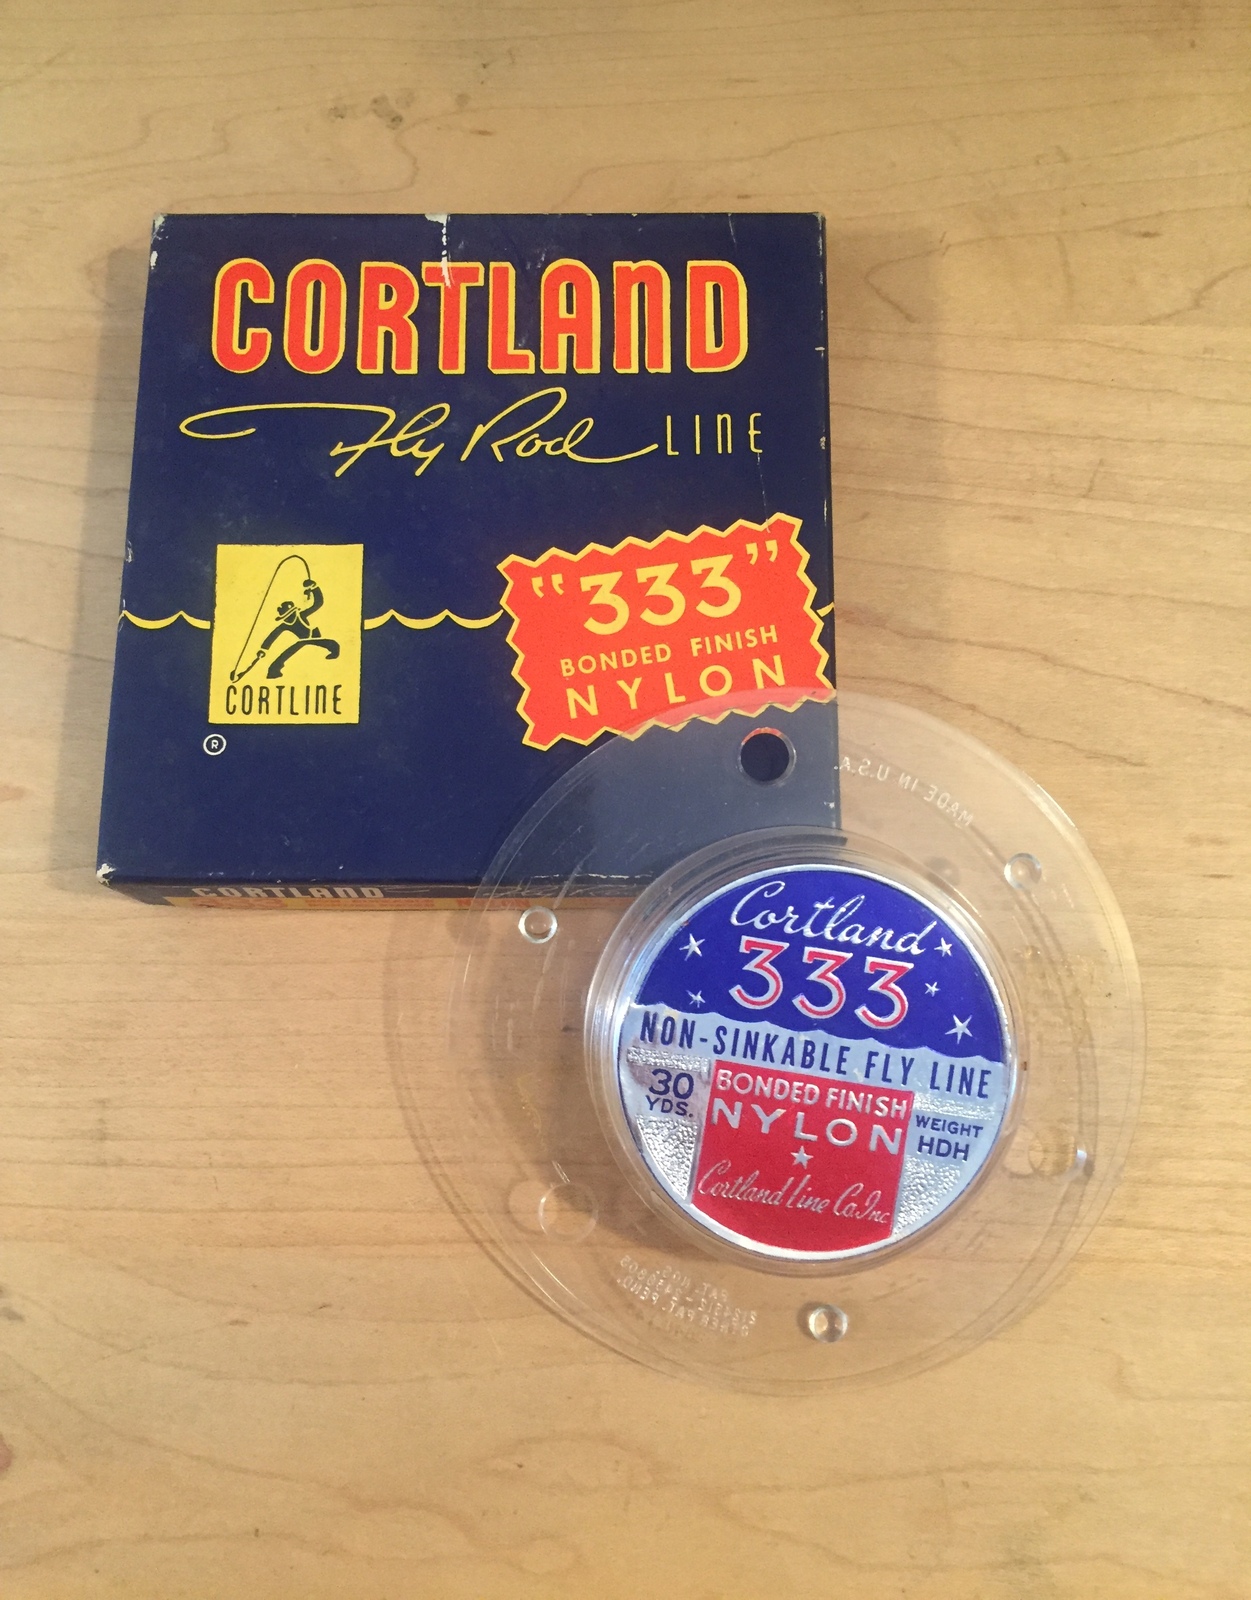 Vintage Cortland fly rod line packaging and spool- Vintage Packaging